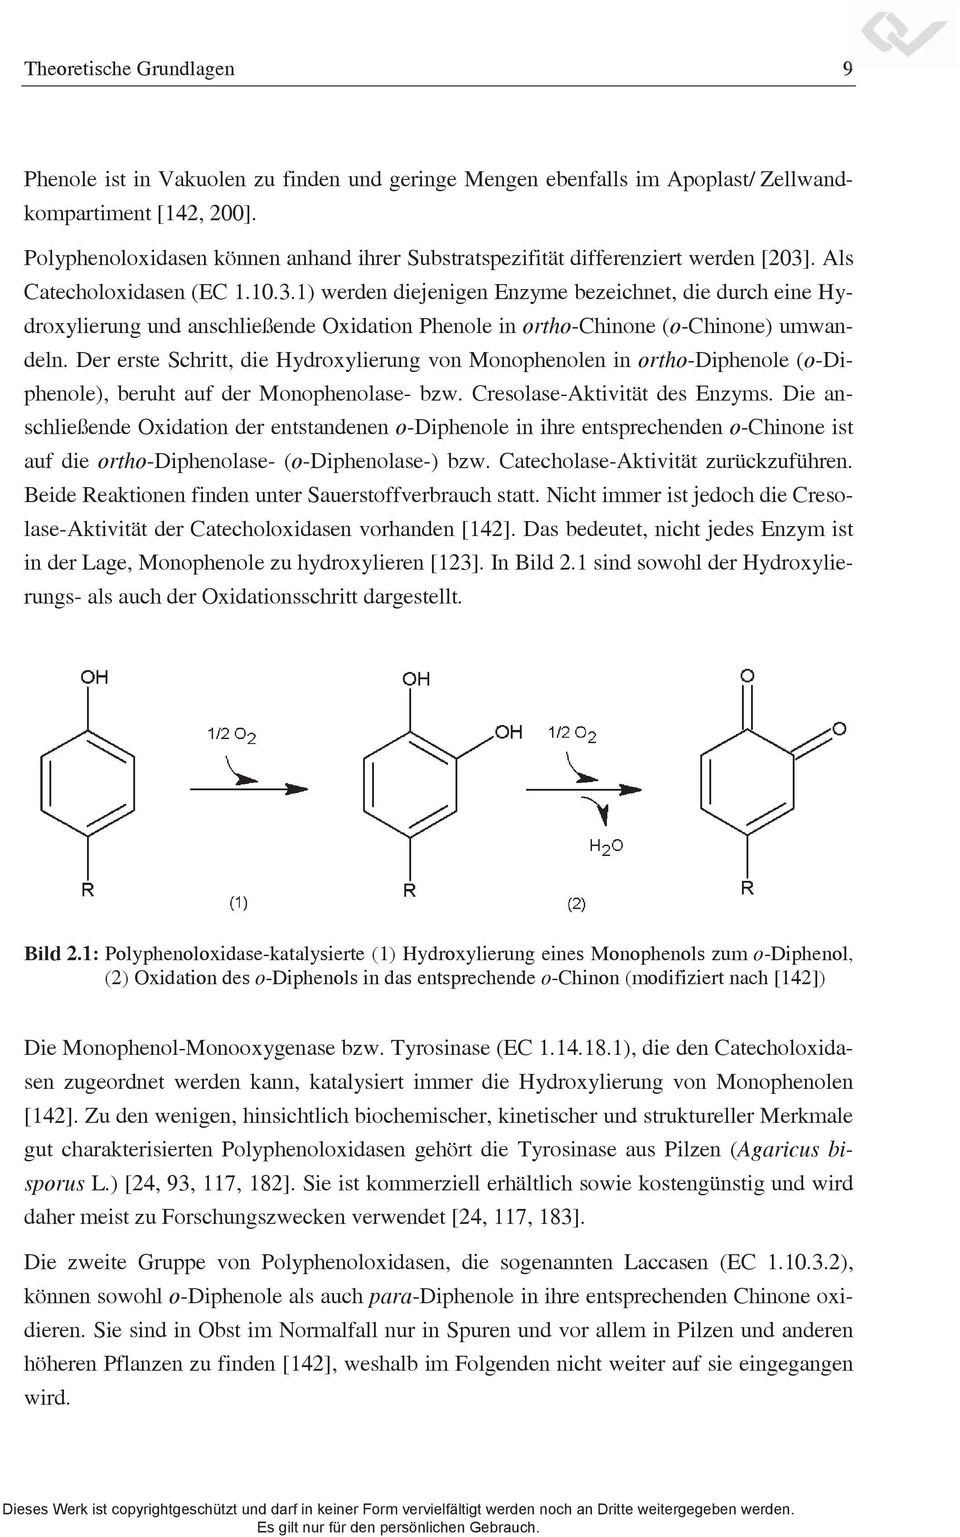 . Als Catecholoxidasen (EC 1.10.3.1) werden diejenigen Enzyme bezeichnet, die durch eine Hydroxylierung und anschließende Oxidation Phenole in ortho-chinone (o-chinone) umwandeln.